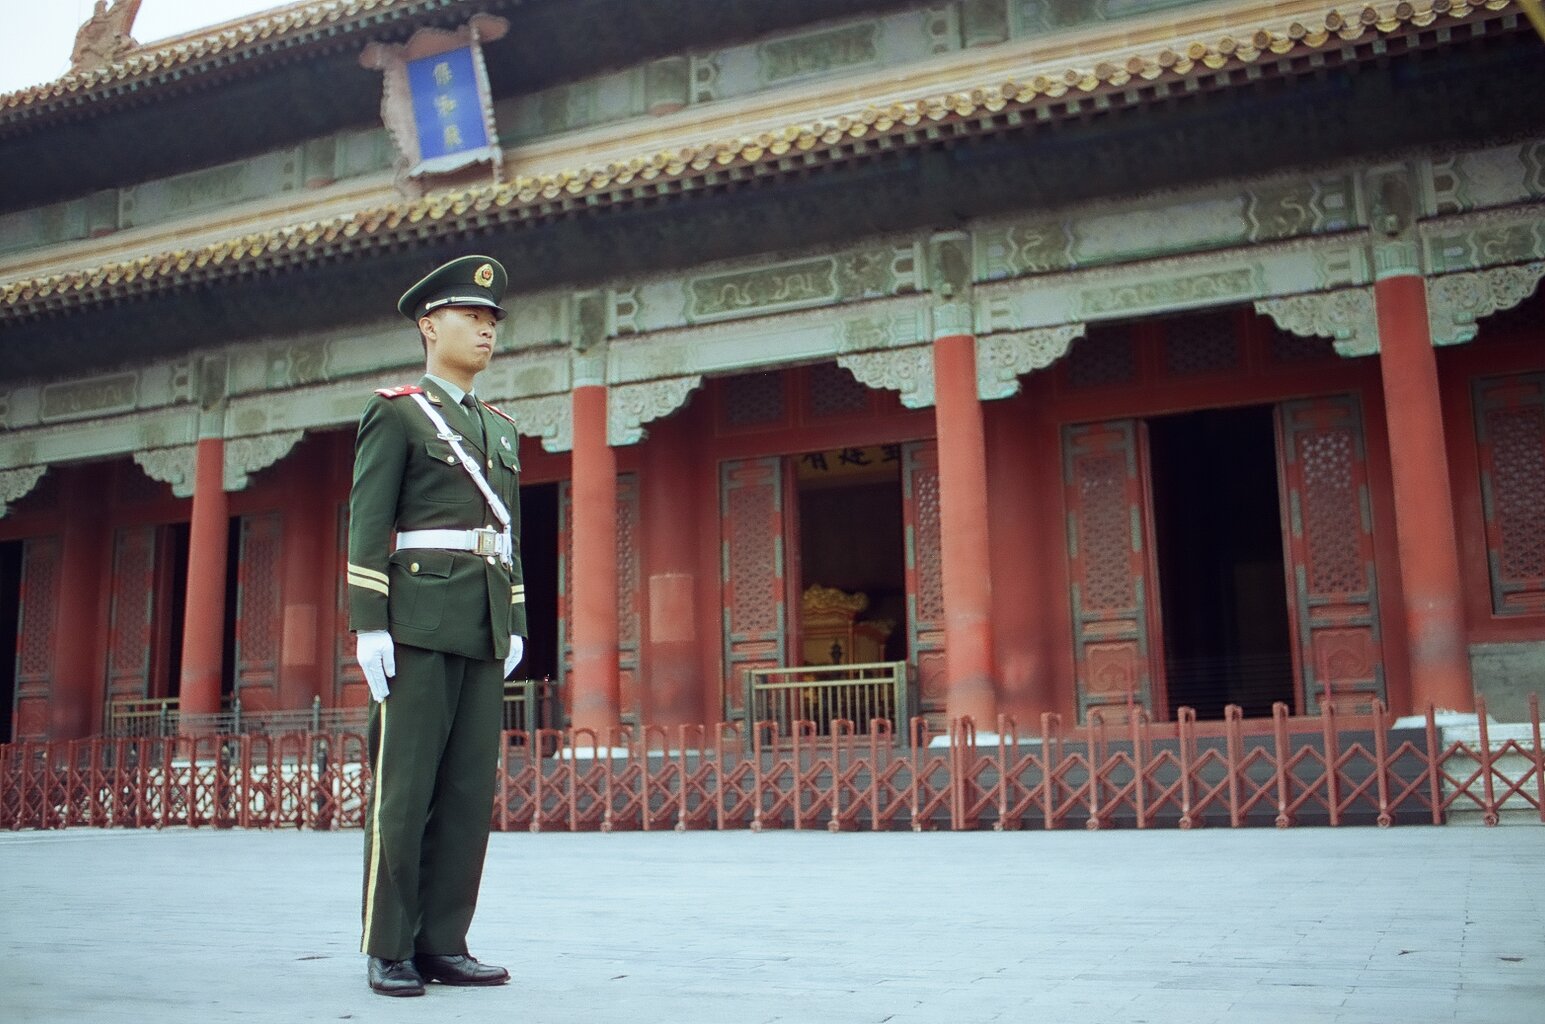  Soldier, Beijing 